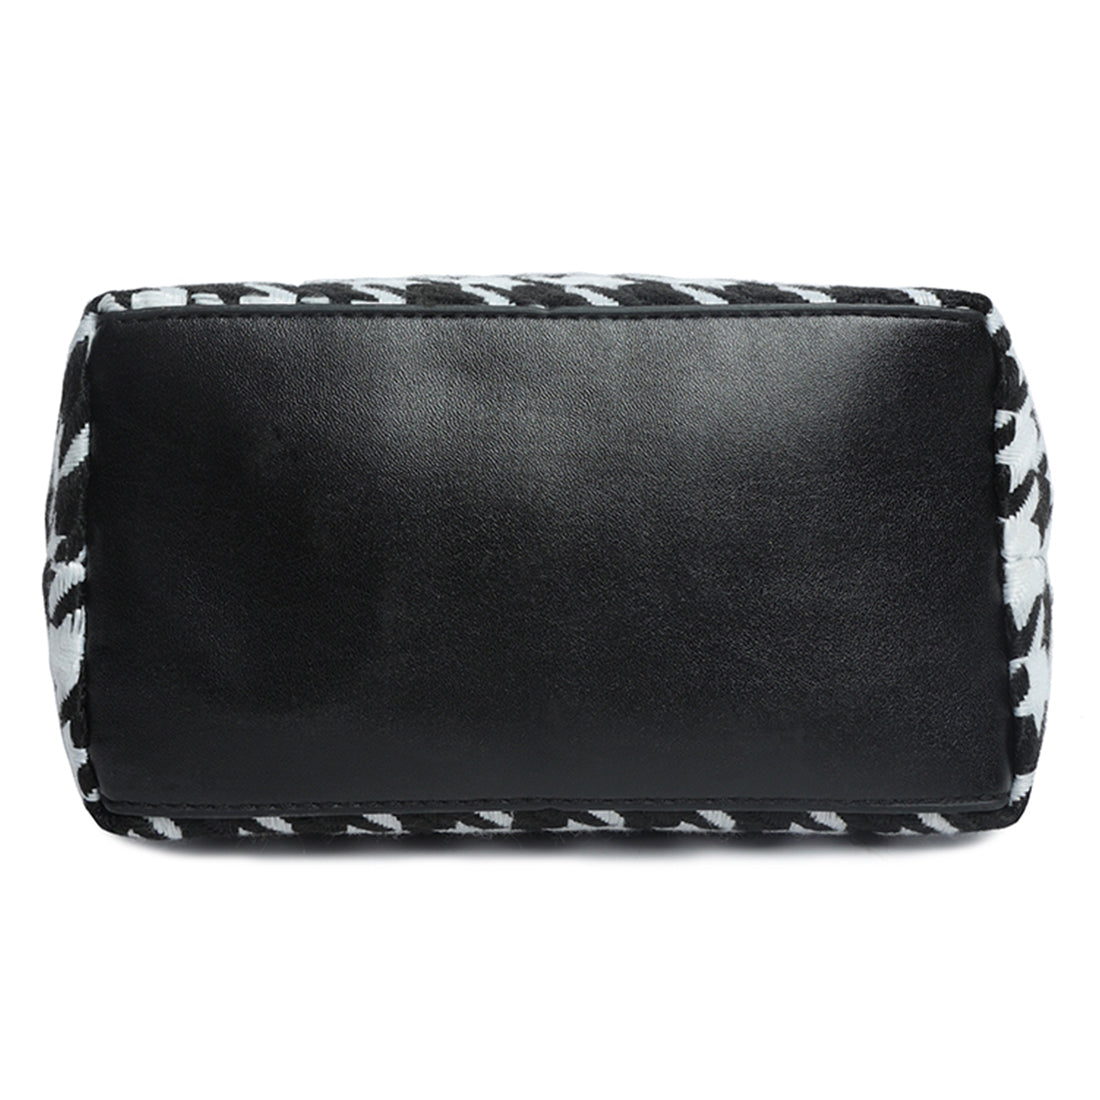 houndstooth pattern handbag#color_black